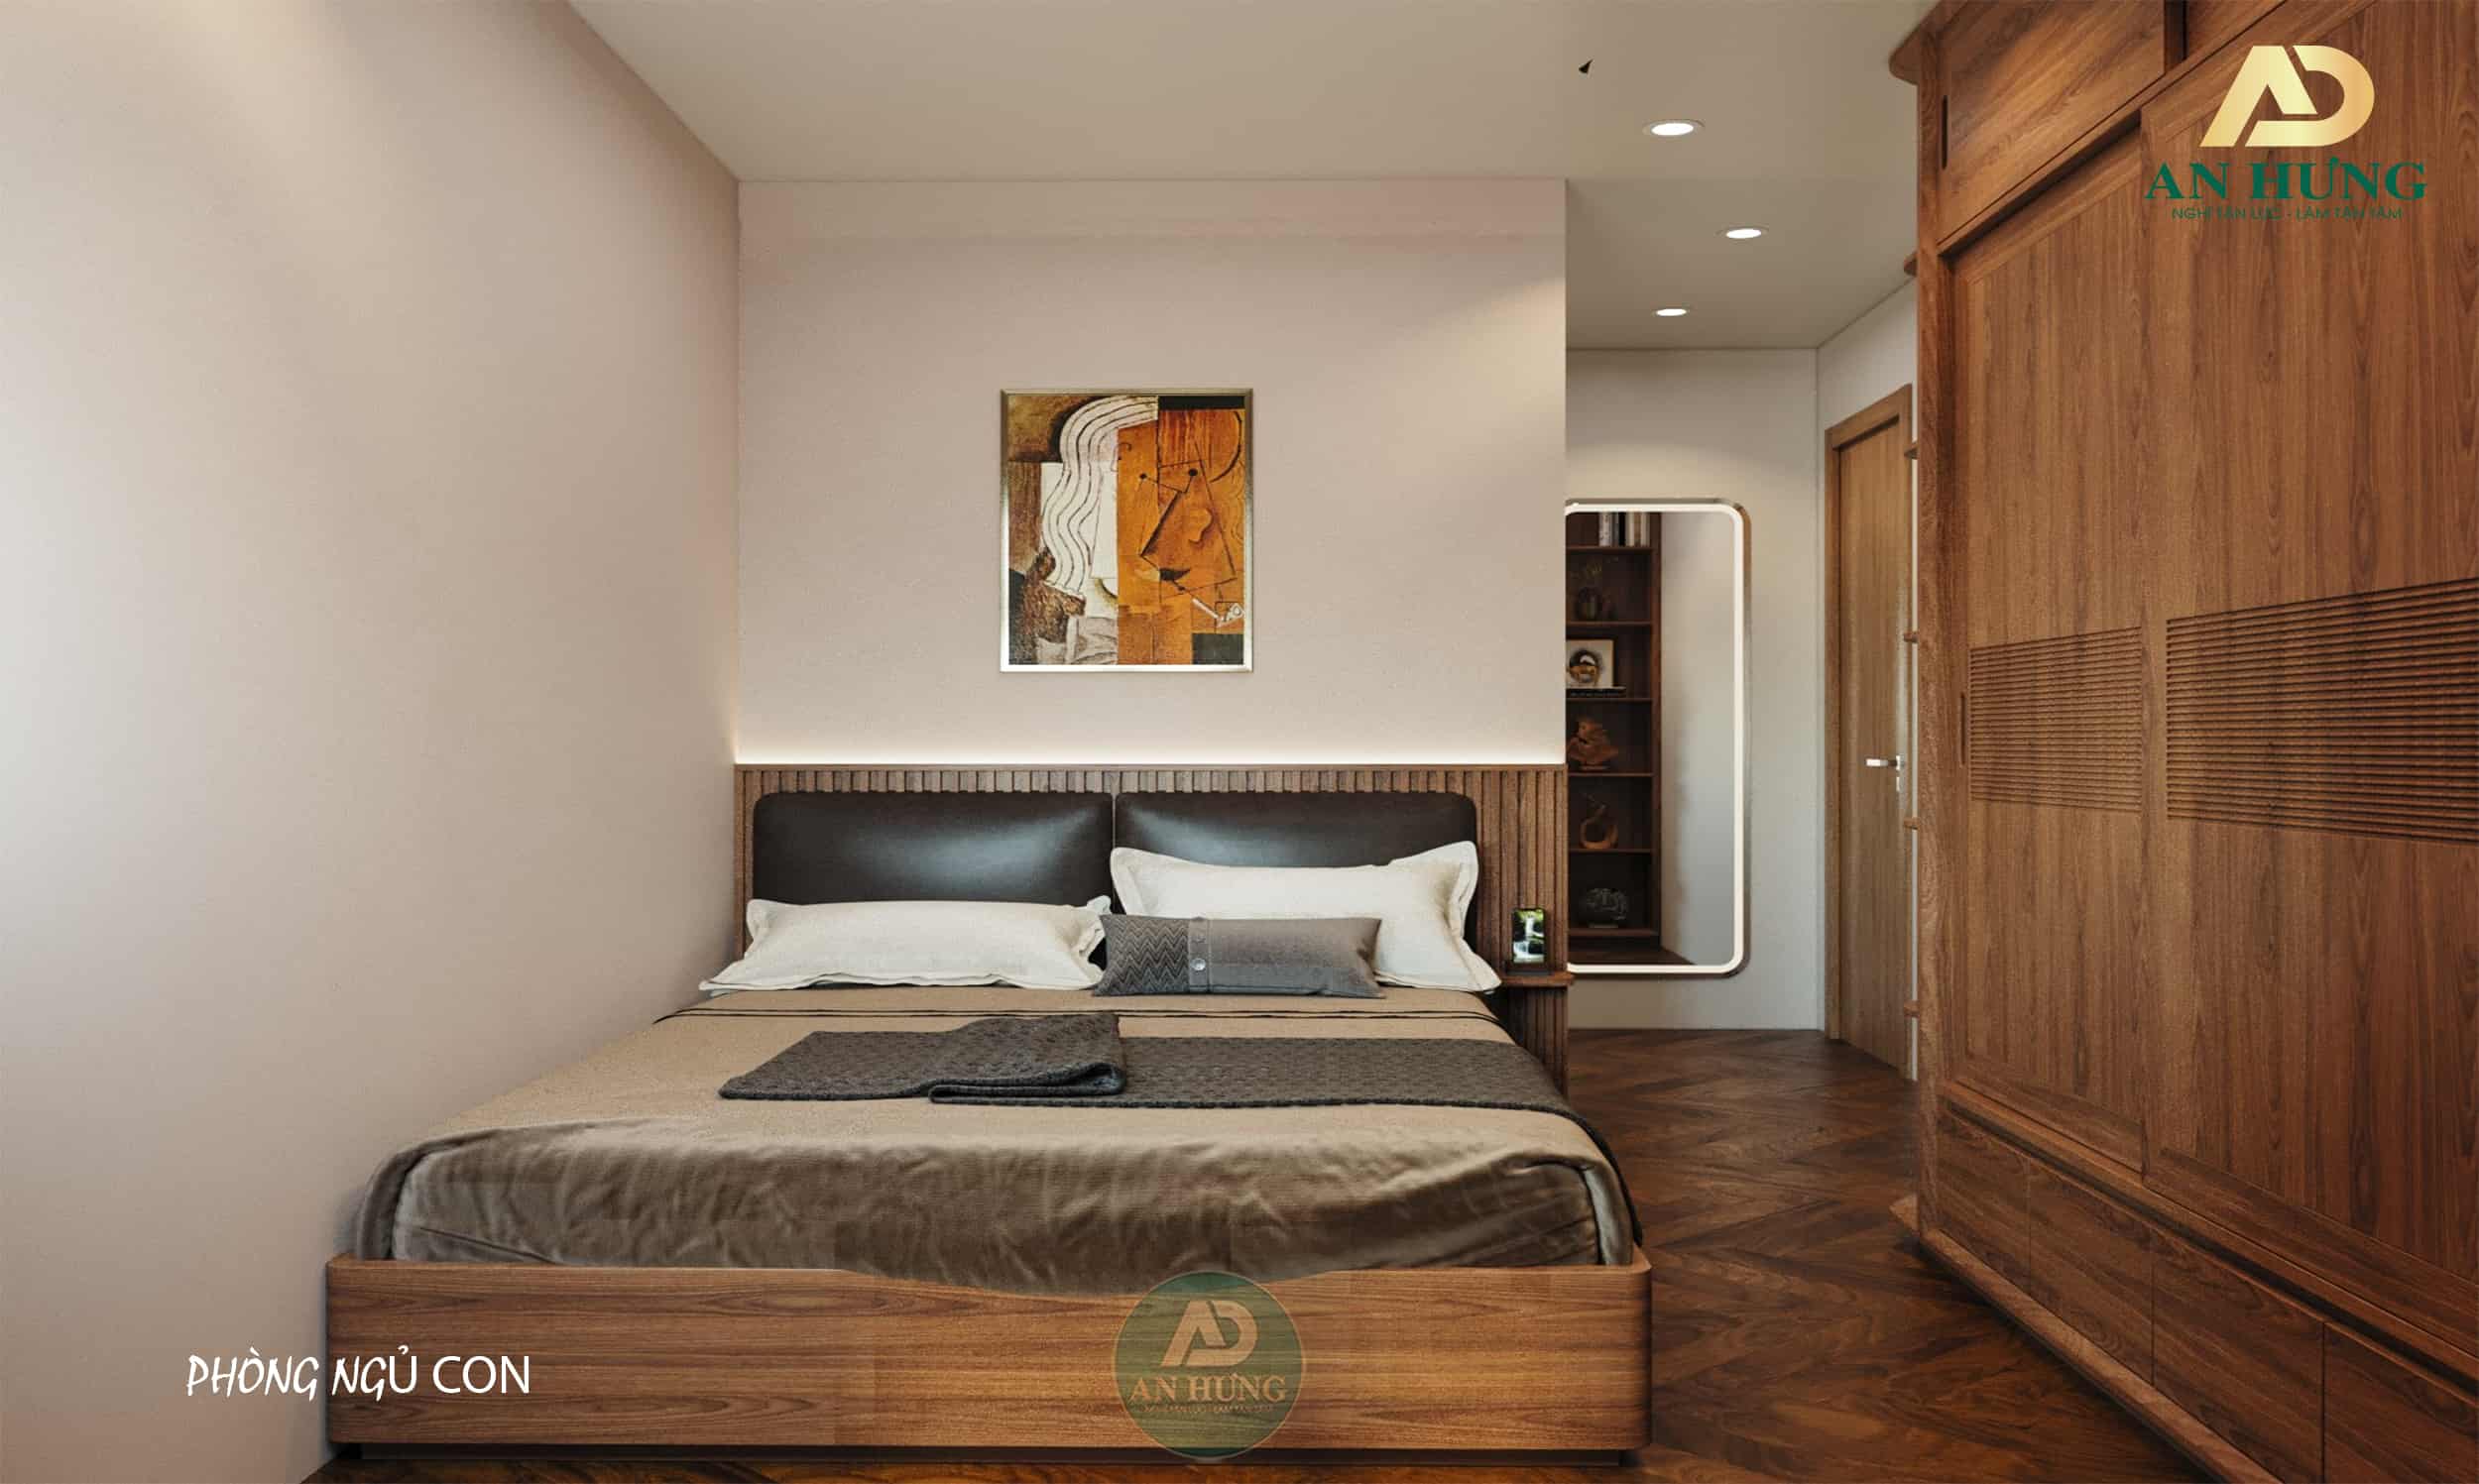 Giường gỗ óc chó phù hợp mọi không gian, kể cả những căn phòng có diện tích khiêm tốn